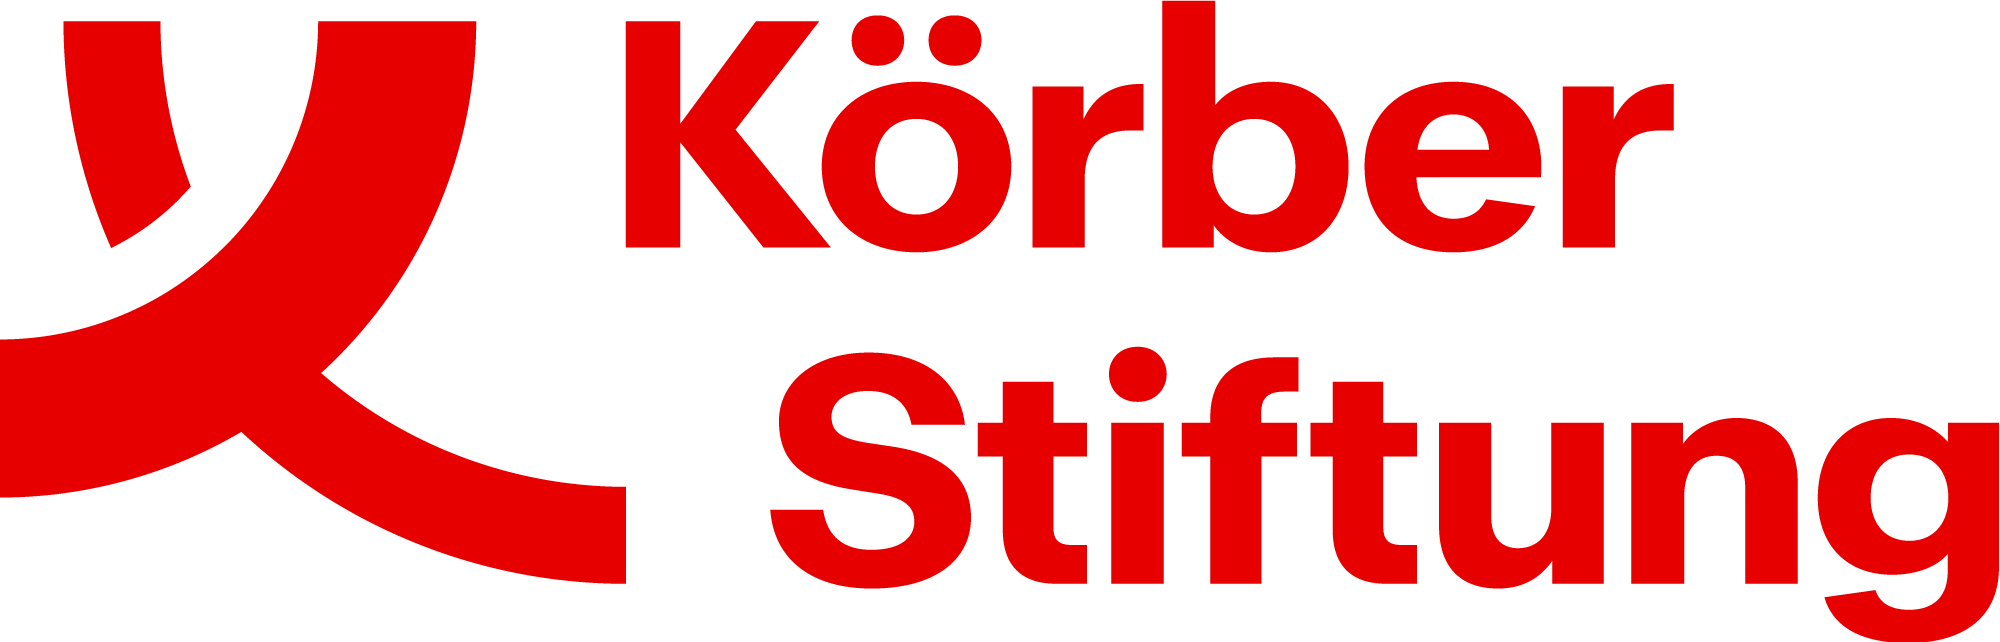 Koerber-Stiftung_Logo-RGB-red